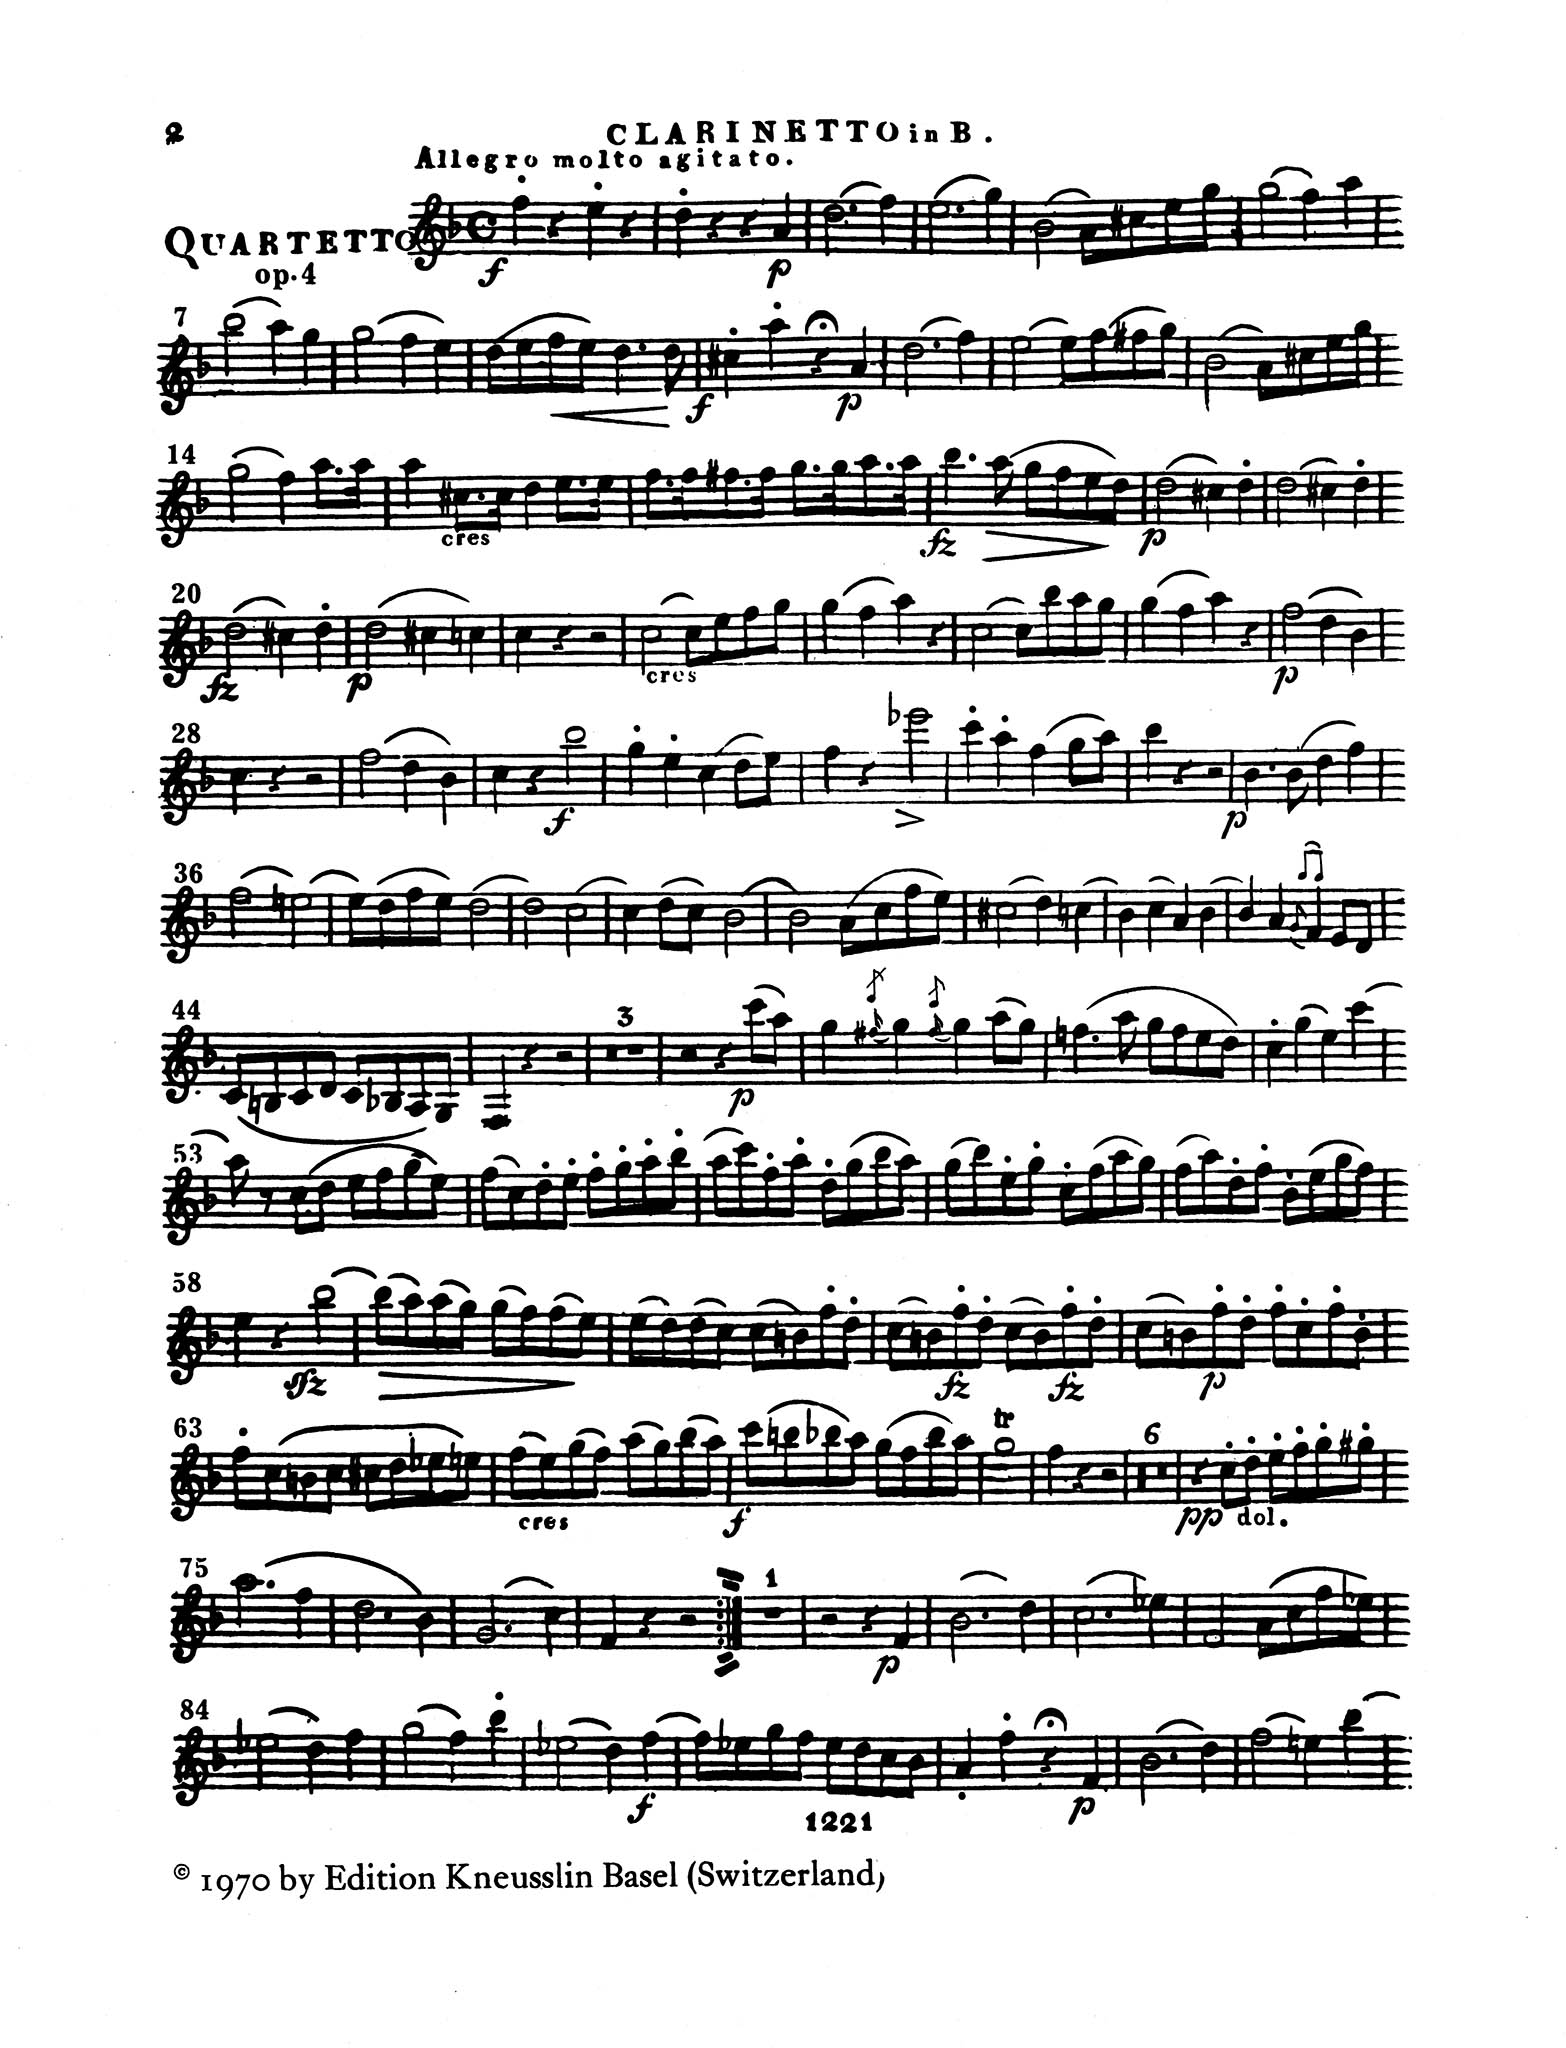 Clarinet Quartet No. 2 in C Minor, Op. 4 - Movement 1